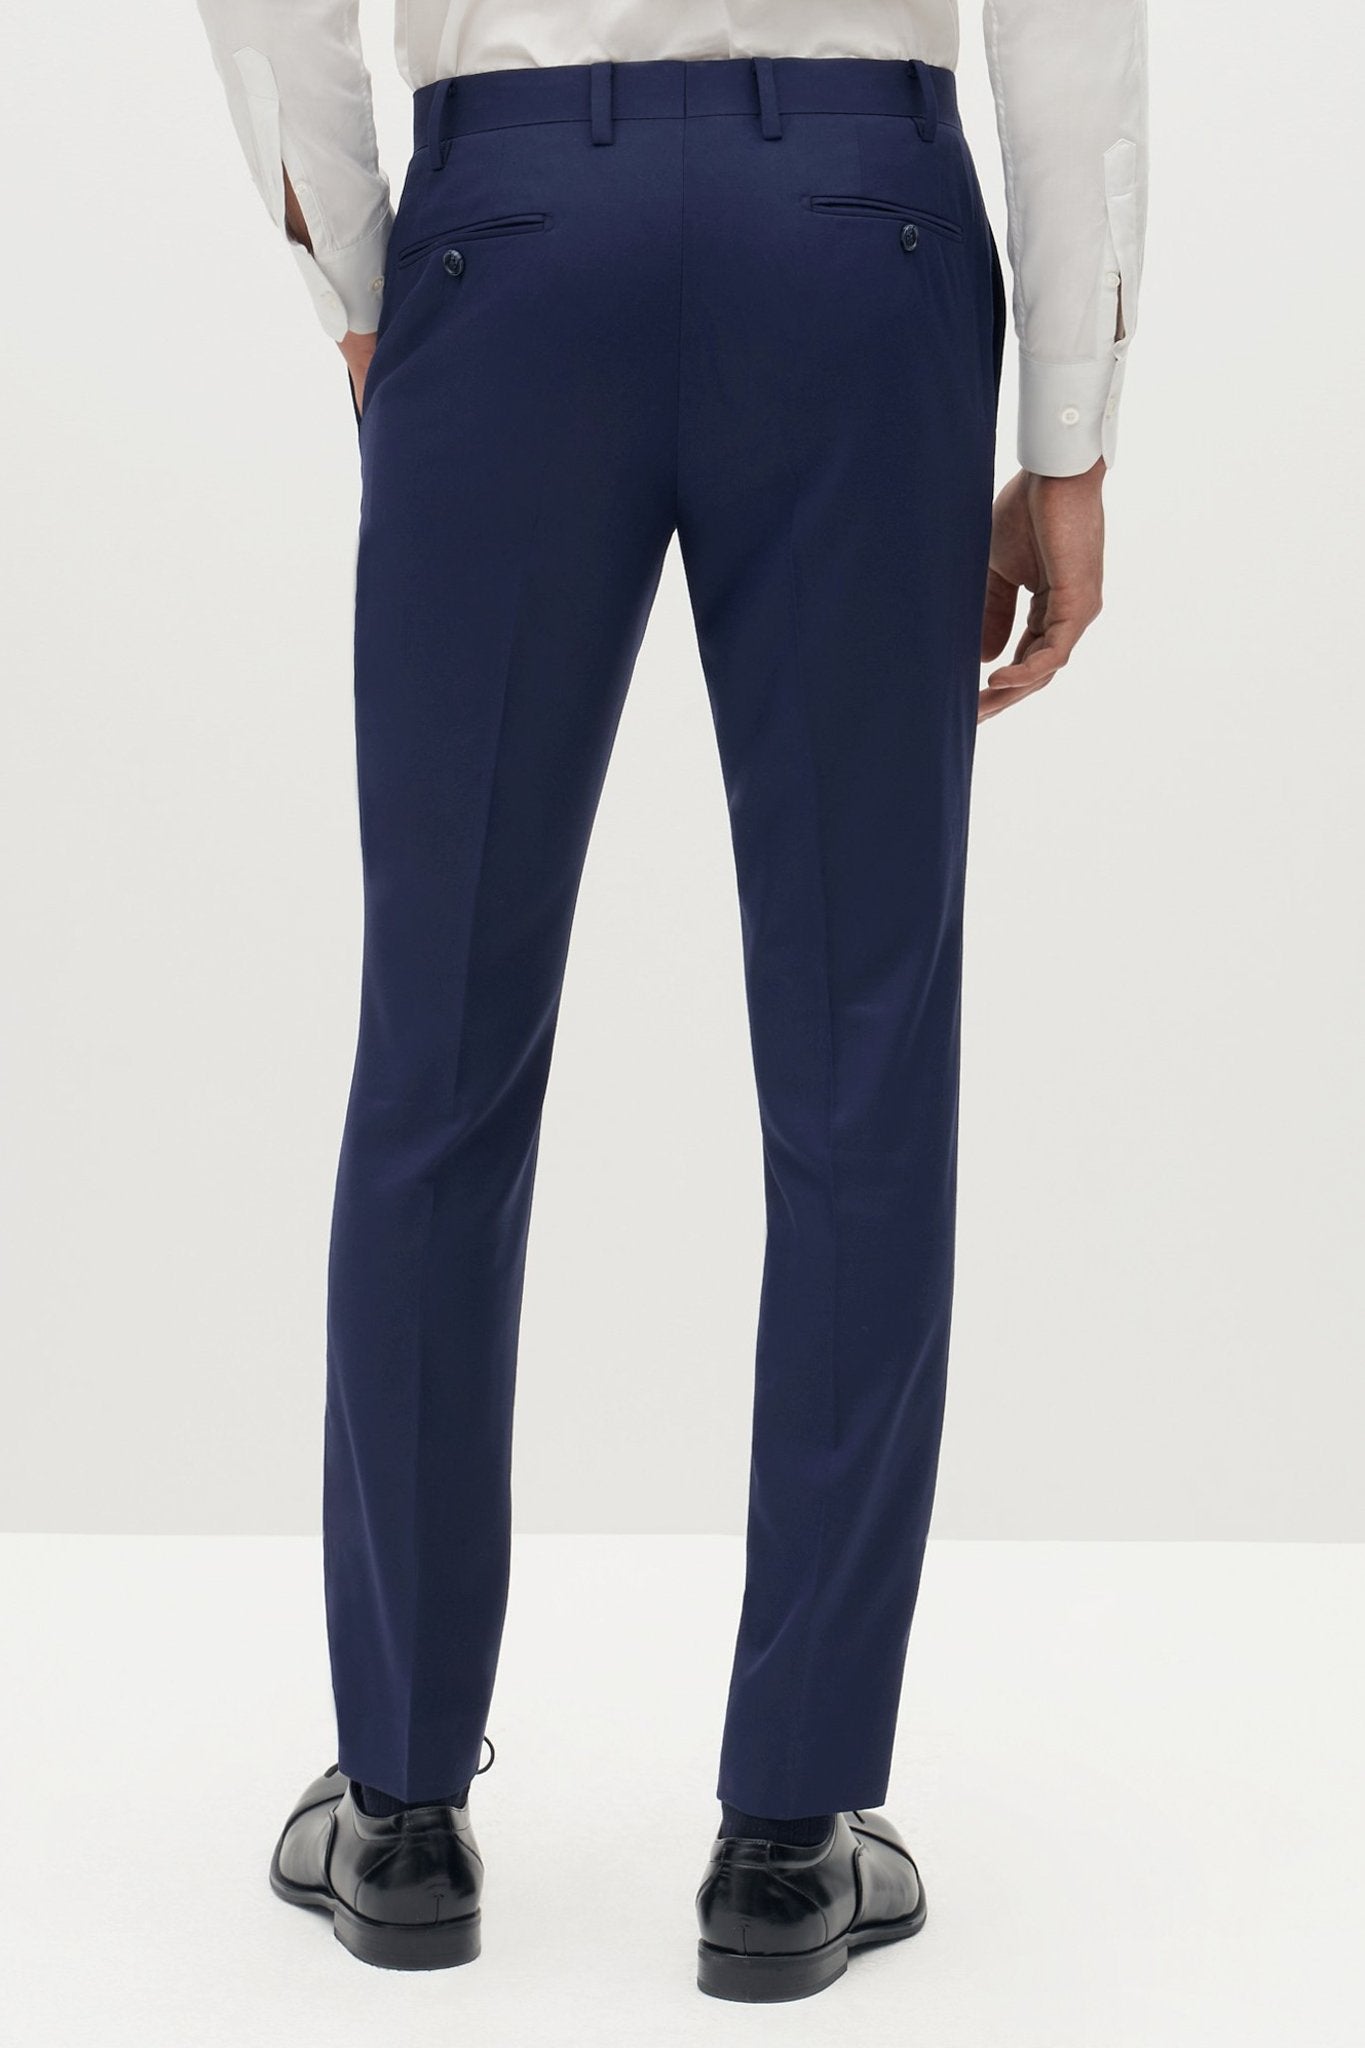 Brilliant Blue Groomsmen Suit Pants by SuitShop, back view